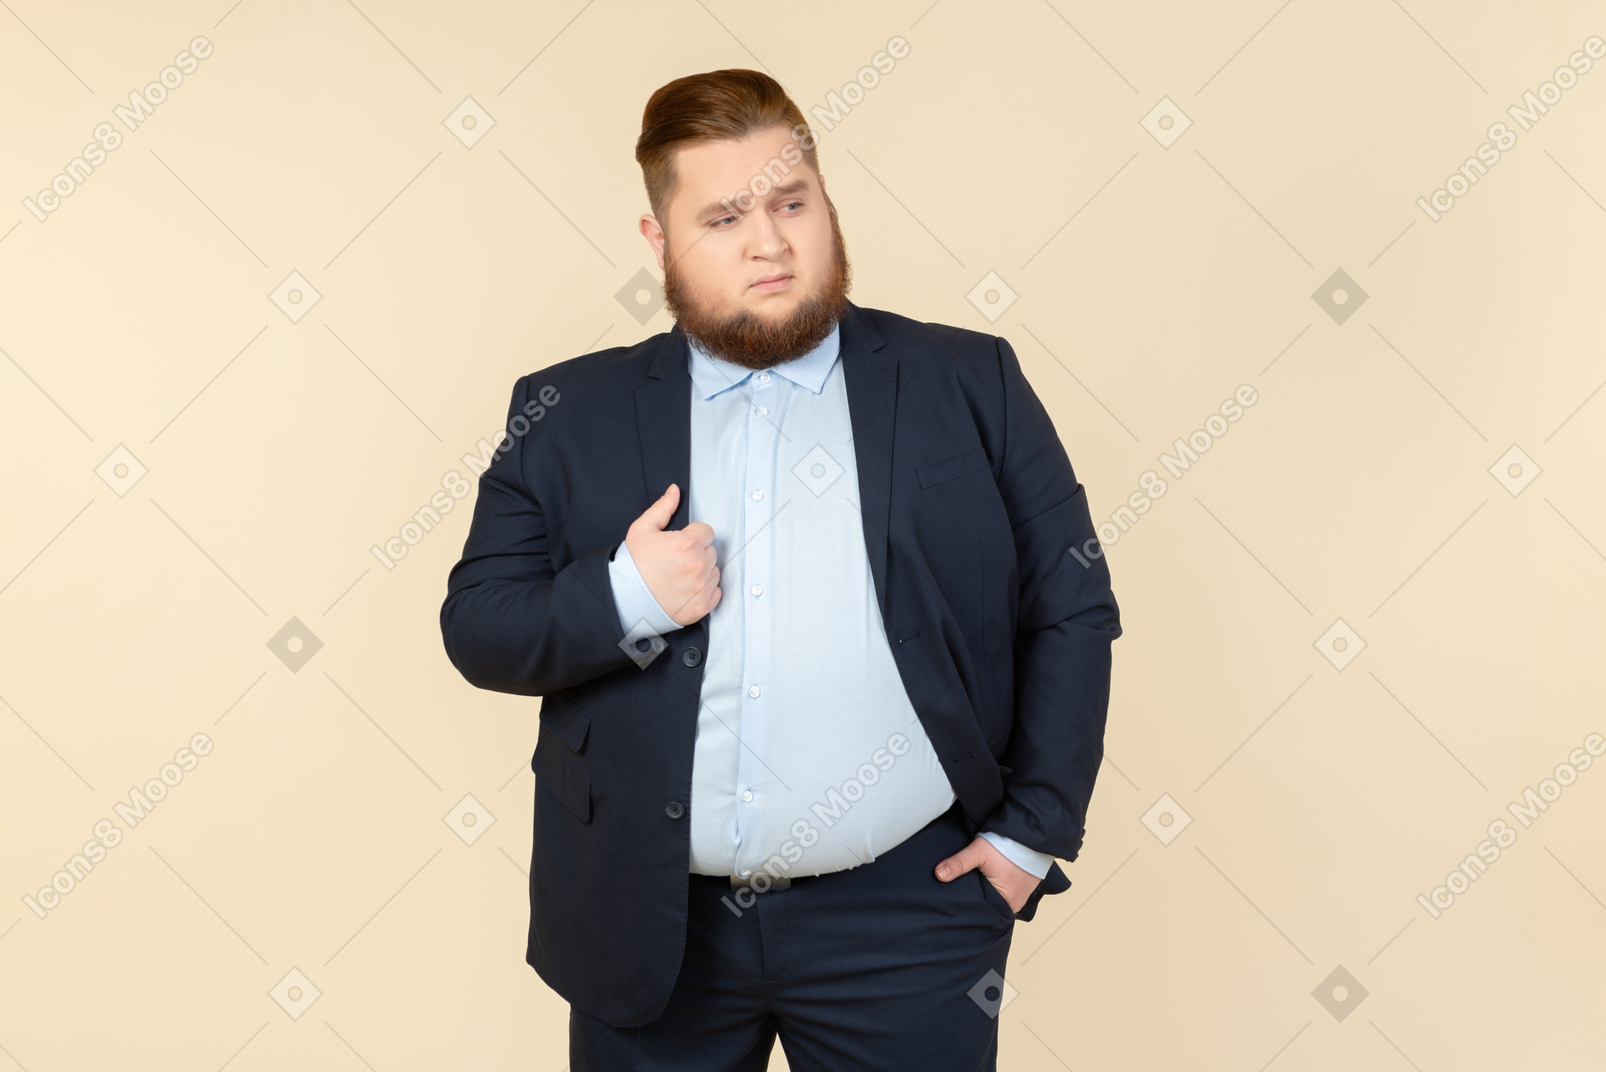 Junger übergewichtiger mann im anzug jacke mit einer hand zu berühren